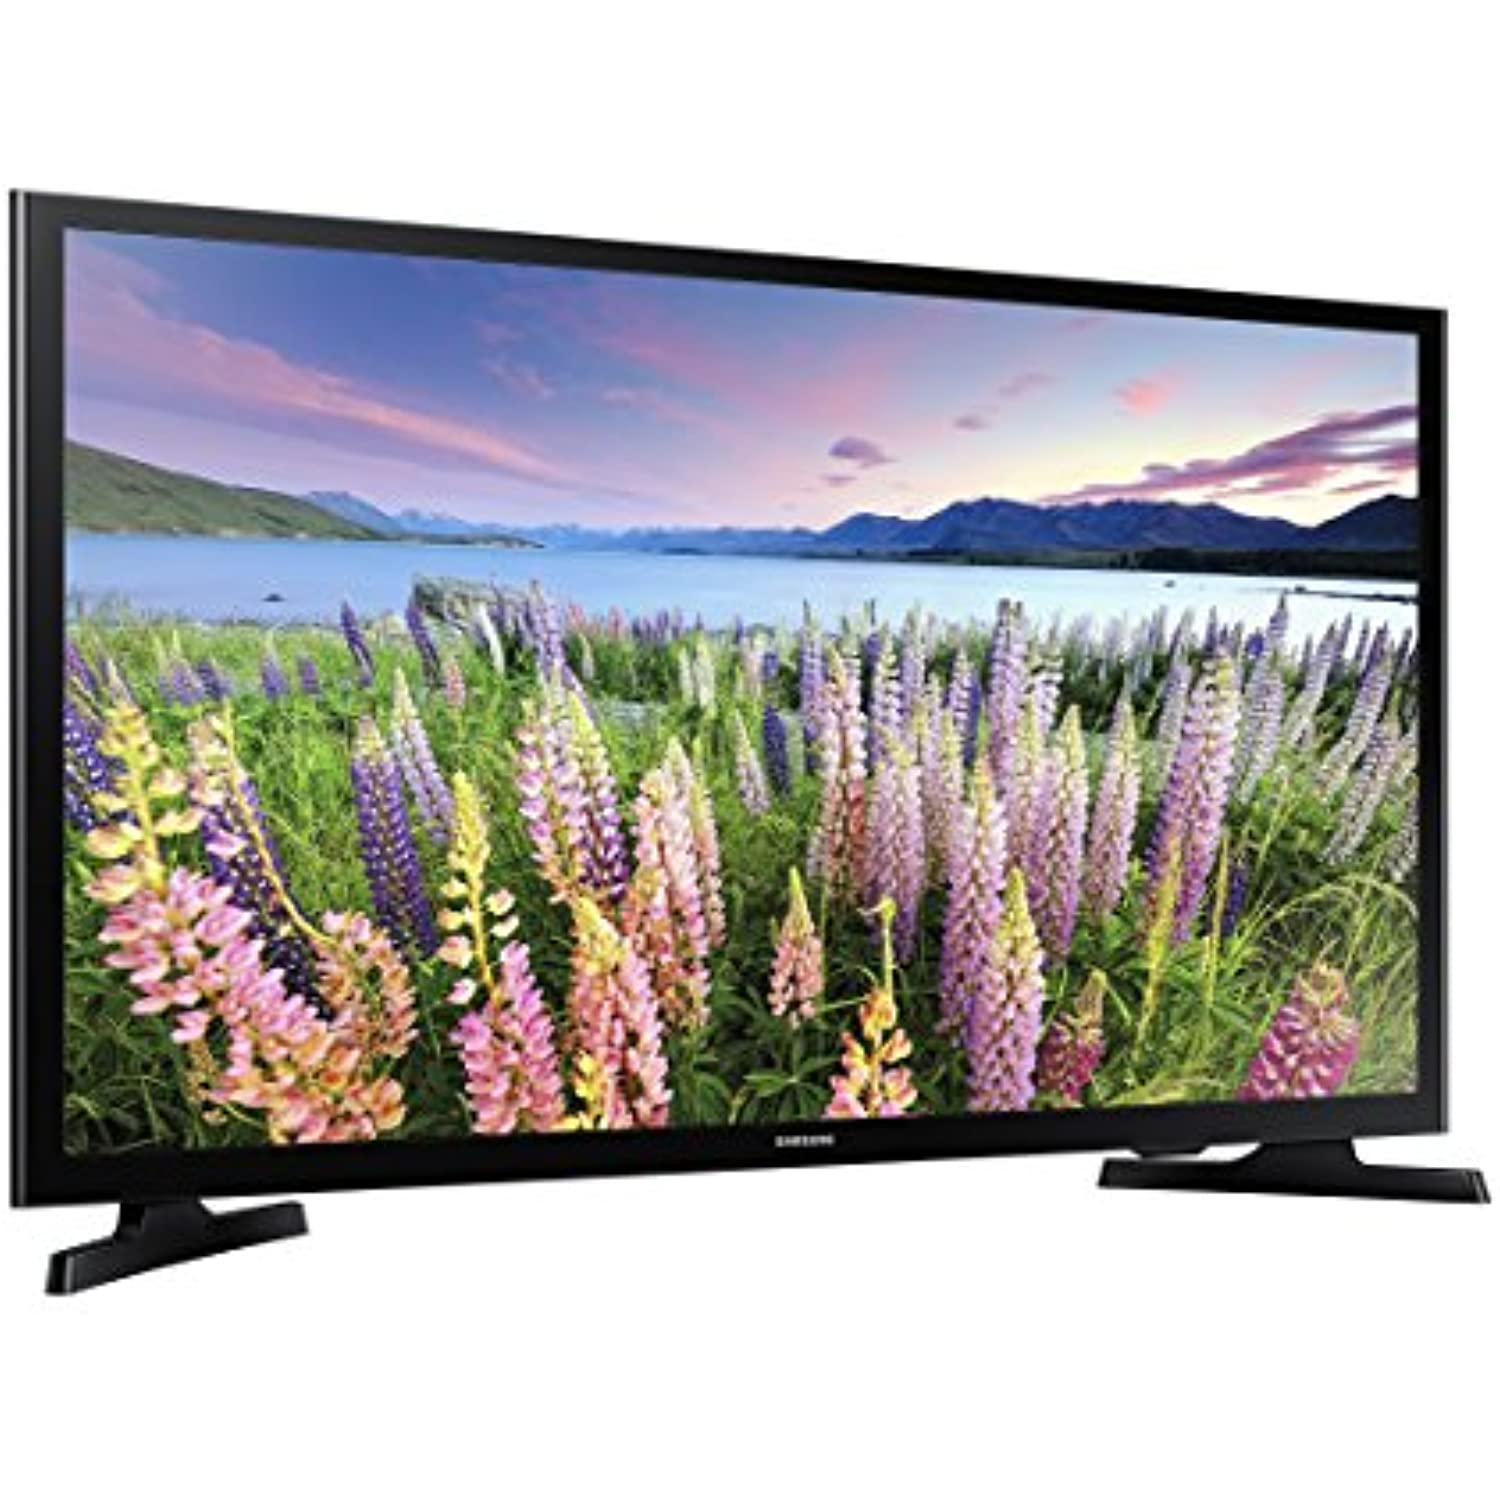 SAMSUNG 40-inch Class LED Smart FHD TV 1080P (UN40N5200AFXZA, 2019 Model) - A Horizon Dawn